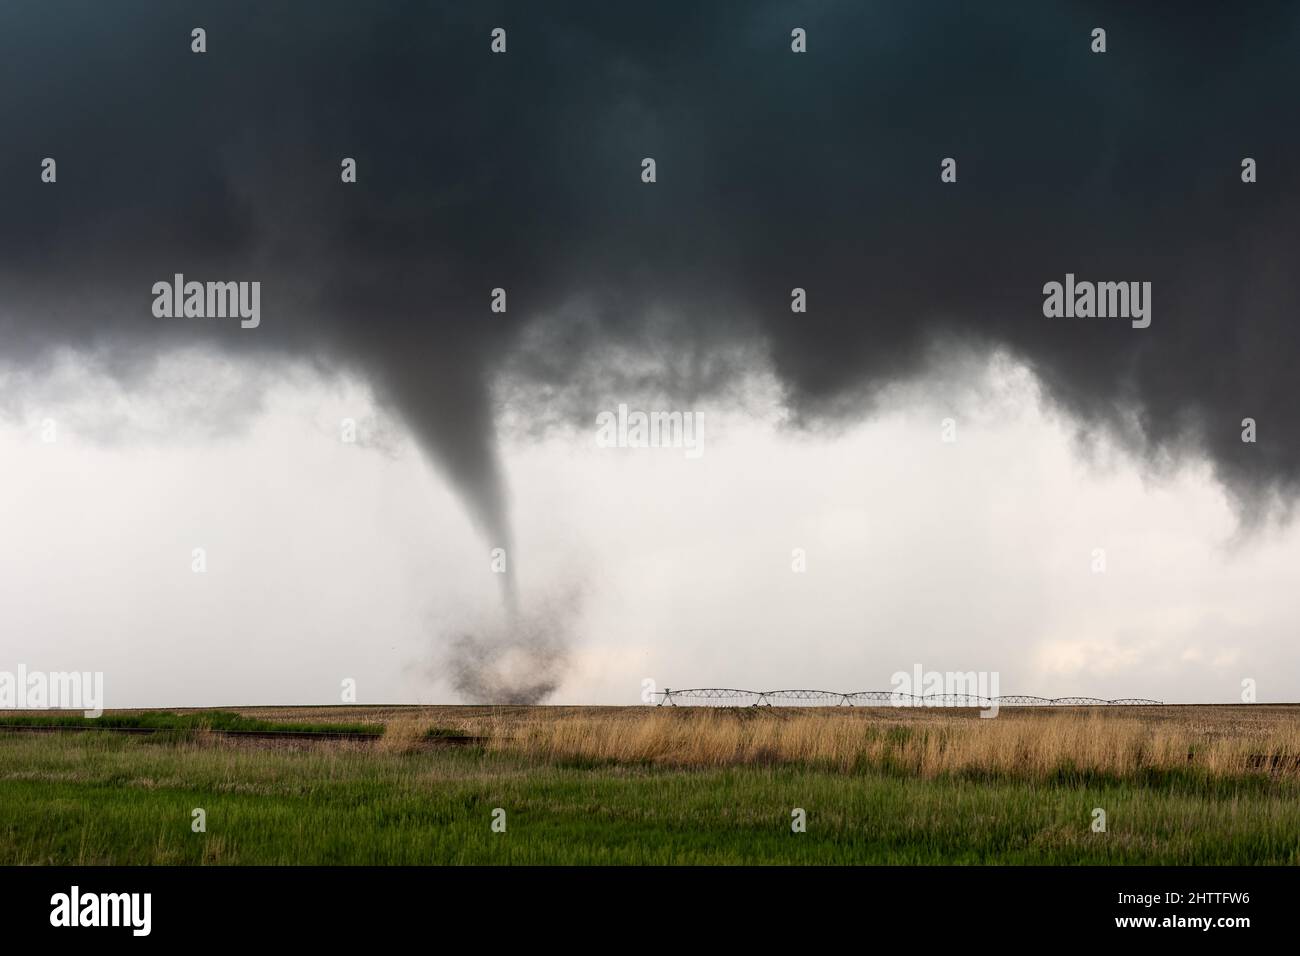 Embudo de tornado tocando abajo en una tormenta cerca de Selden, Kansas, EE.UU Foto de stock